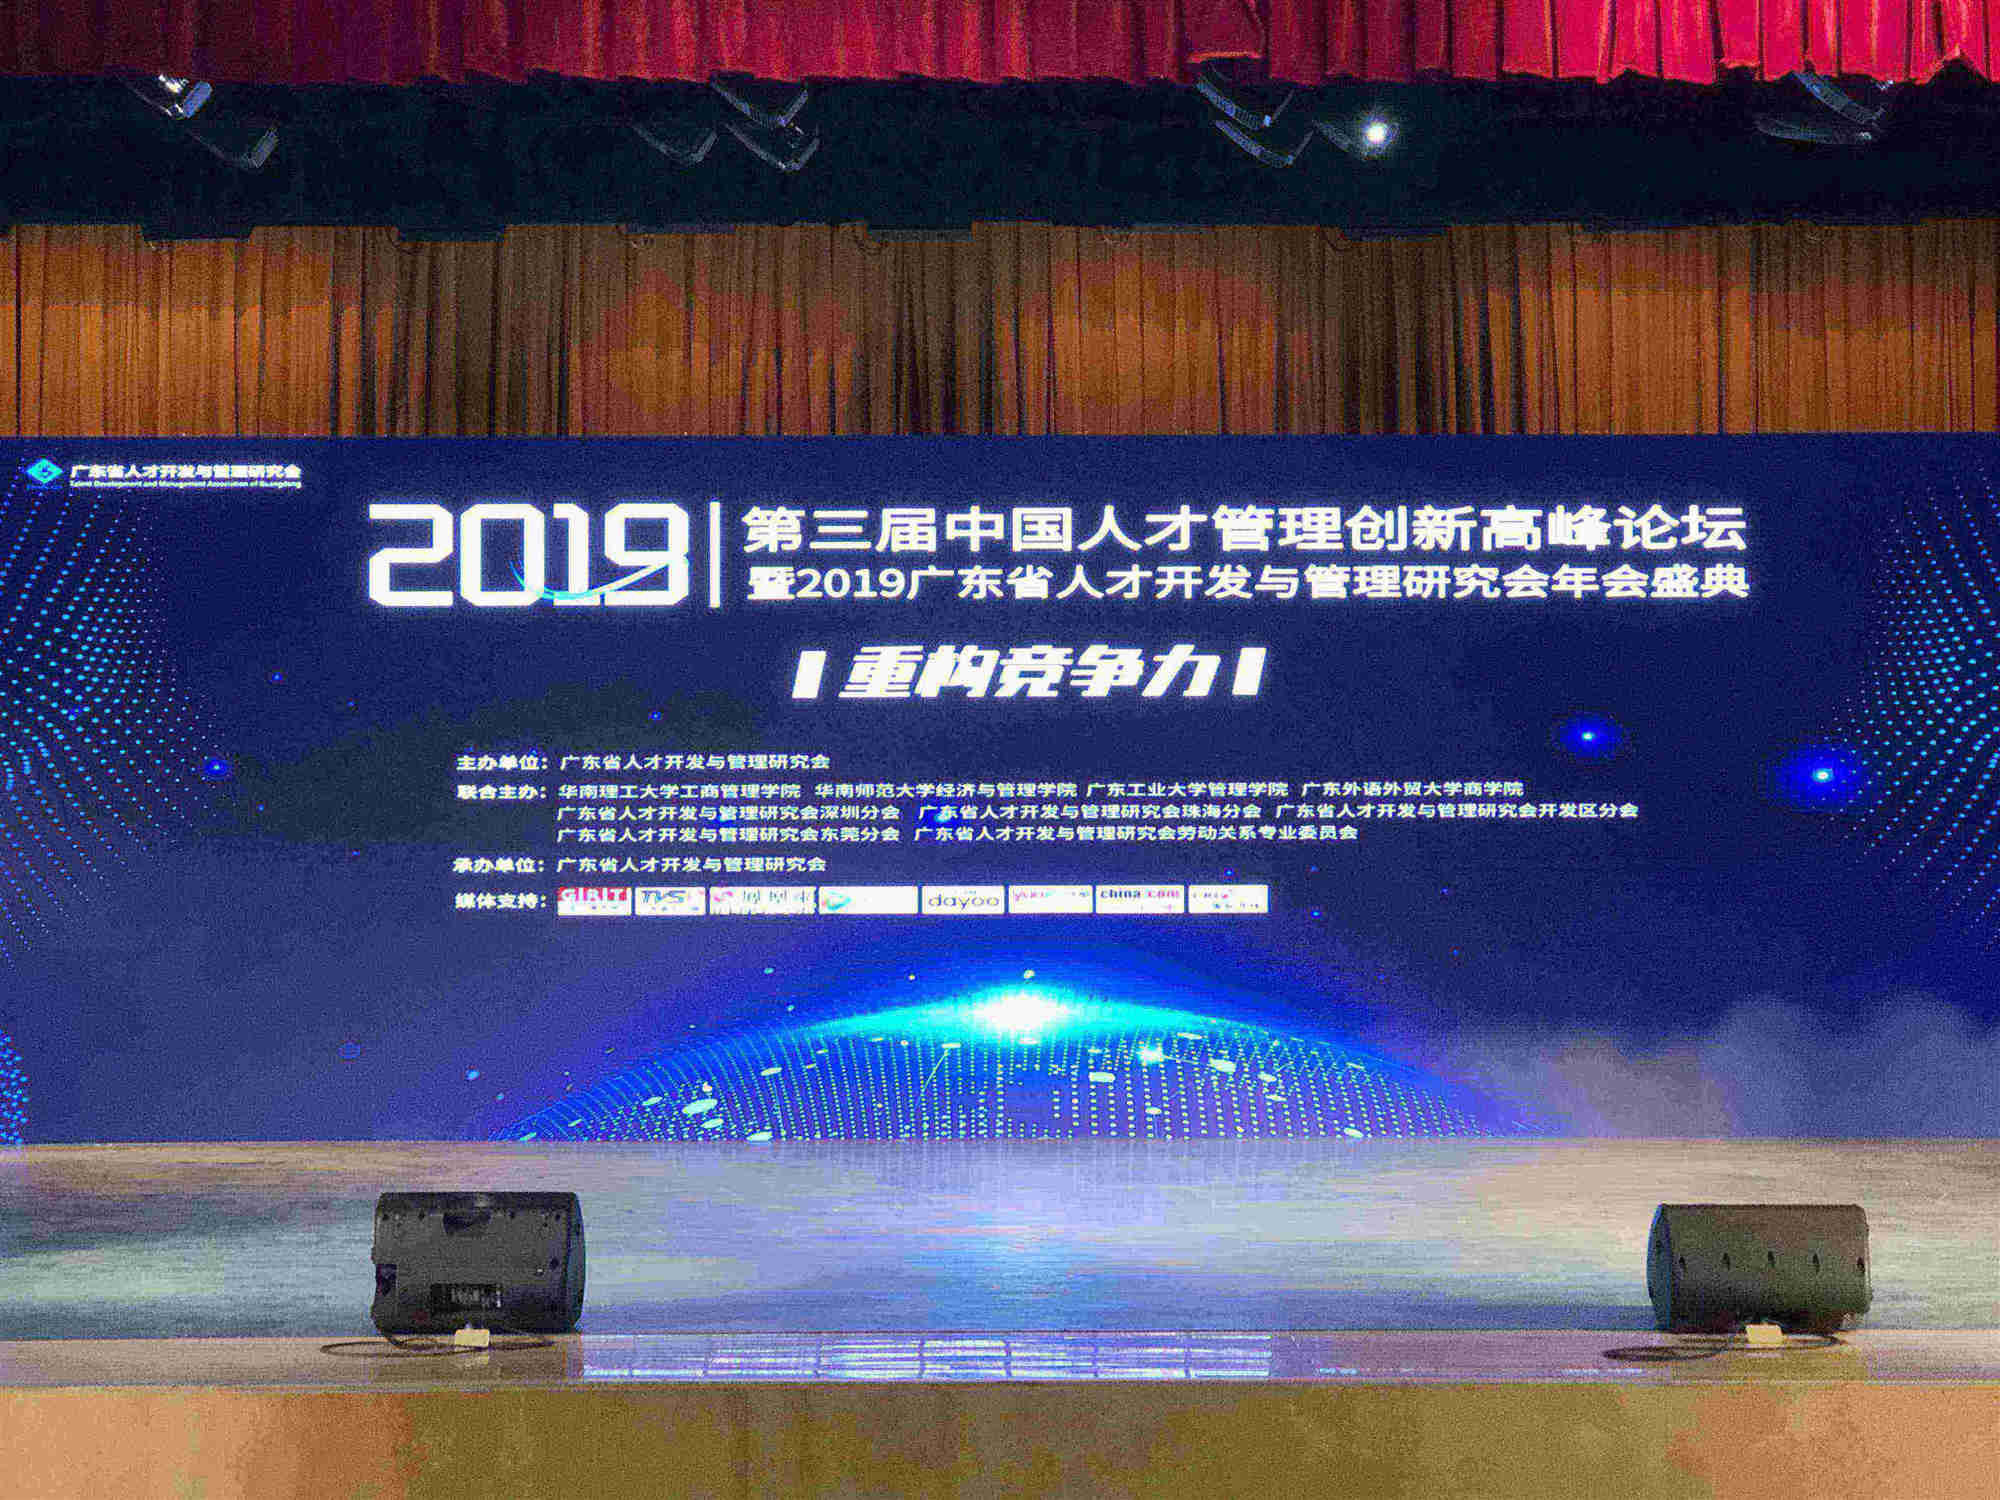 2019年华南区最佳人才管理创新奖-GVS视声获奖案例